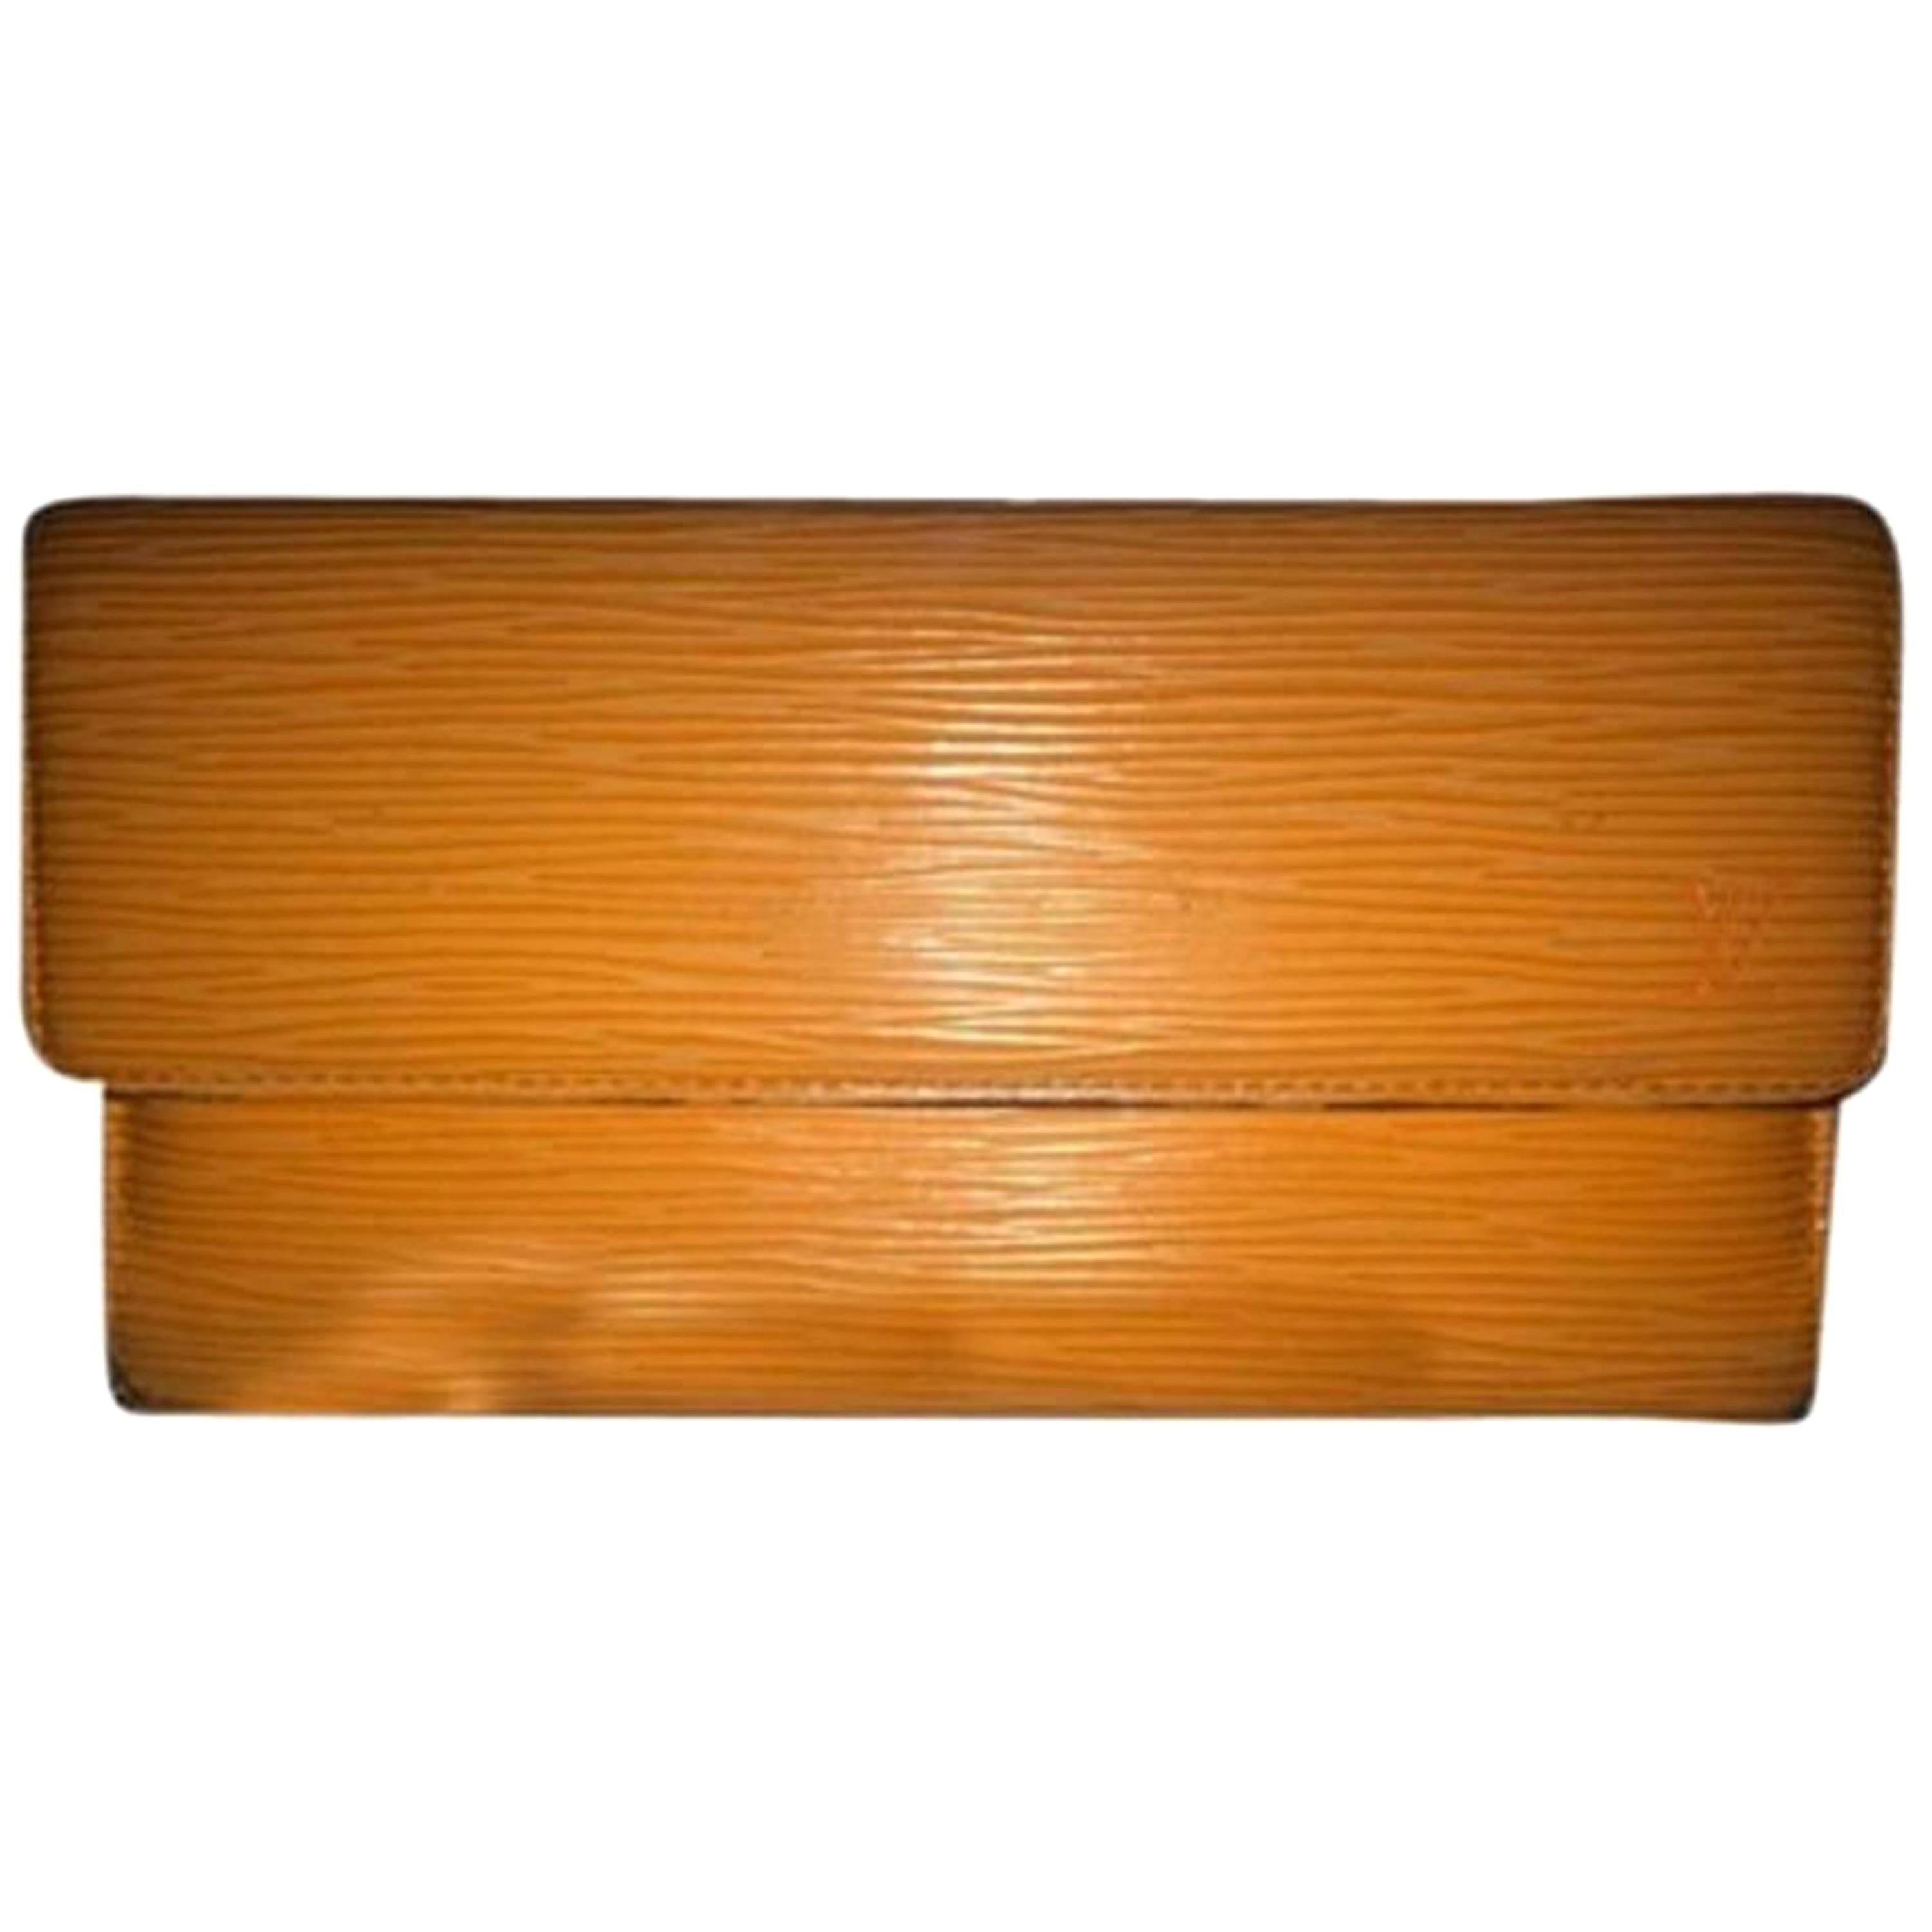 Louis Vuitton Epi Leather Orange Lvtl10 Wallet For Sale